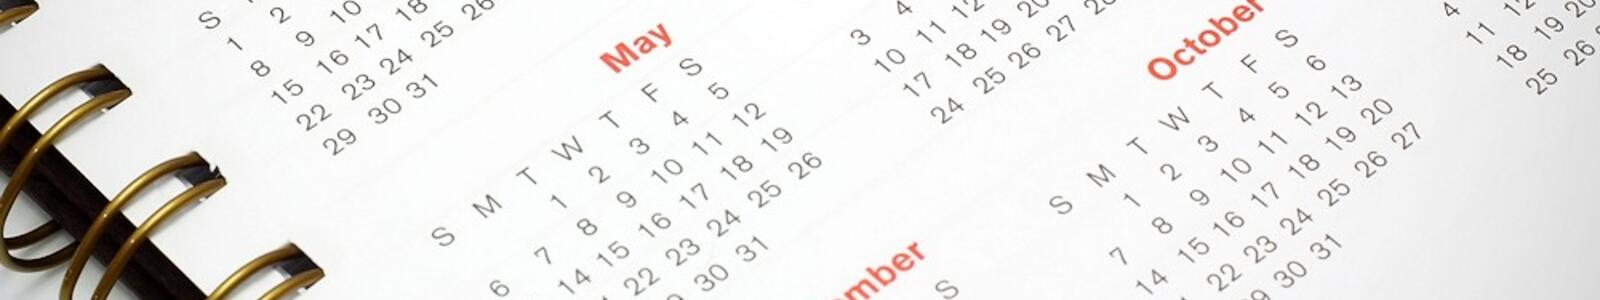 ferienkalender